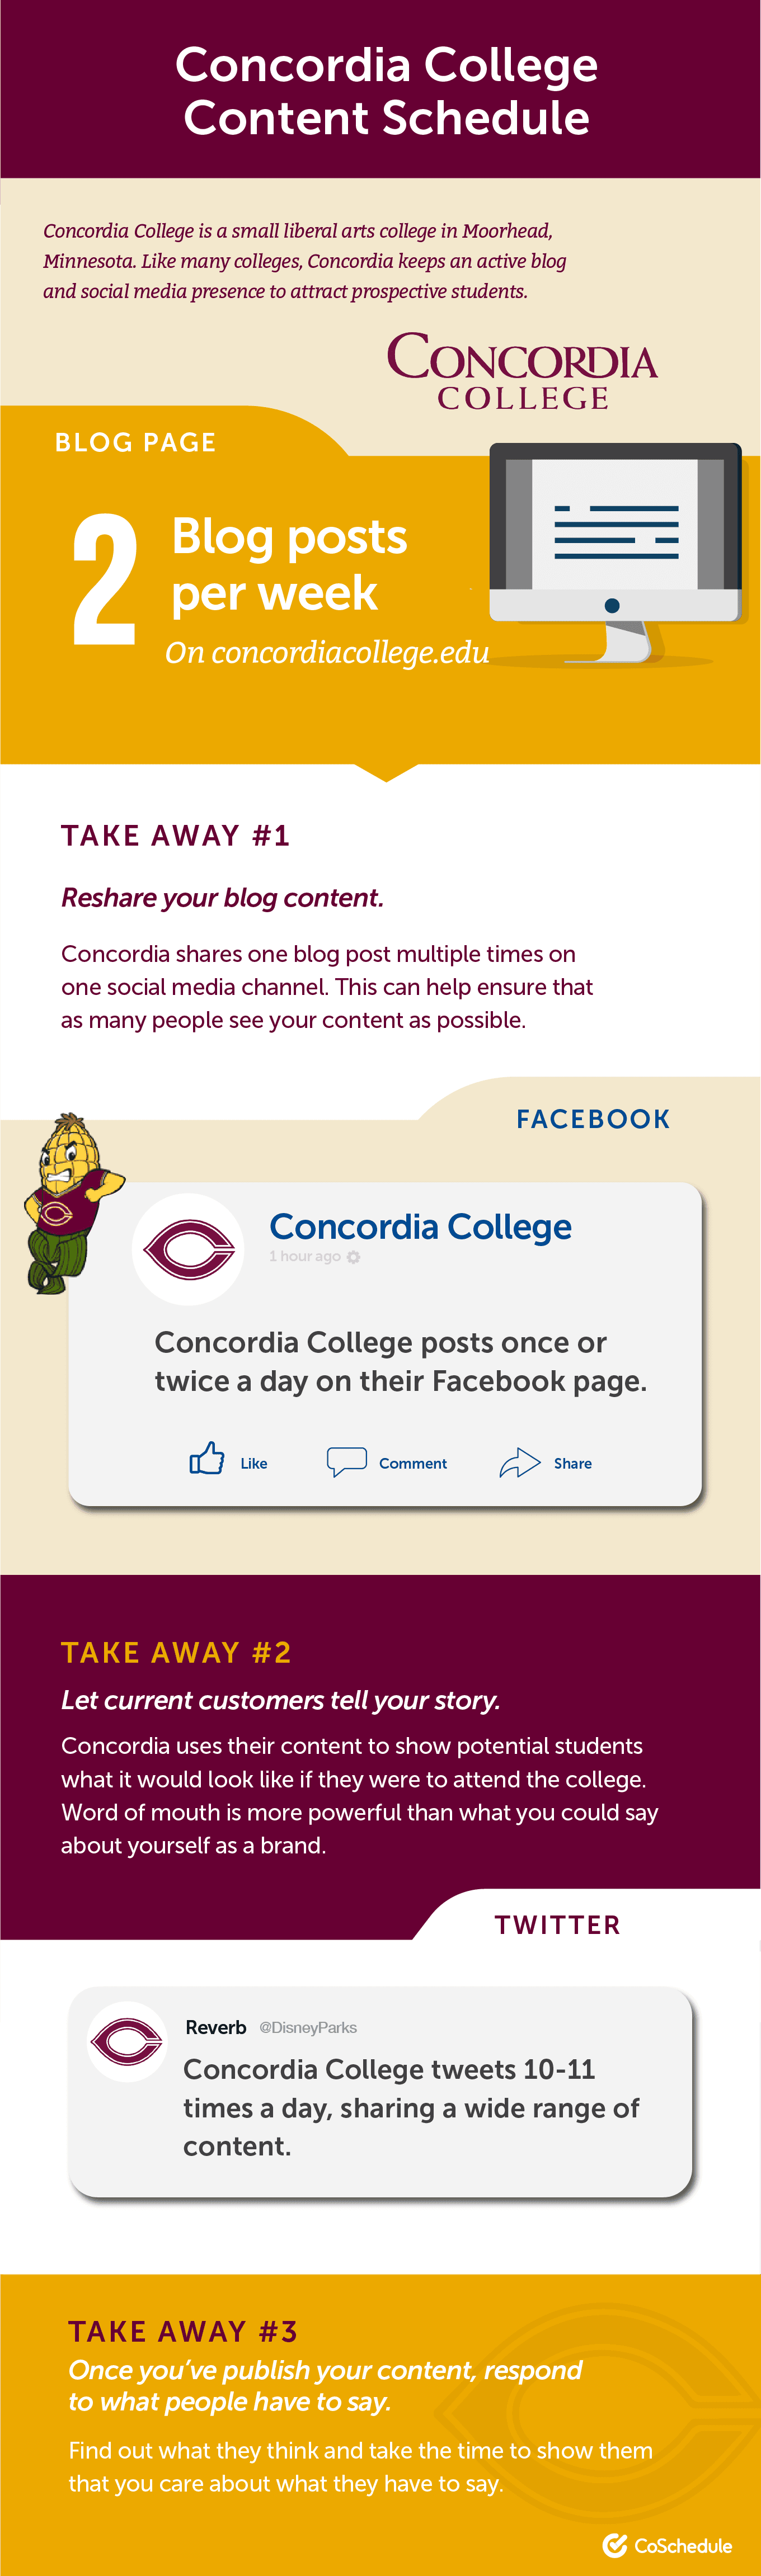 Concordia College content schedule